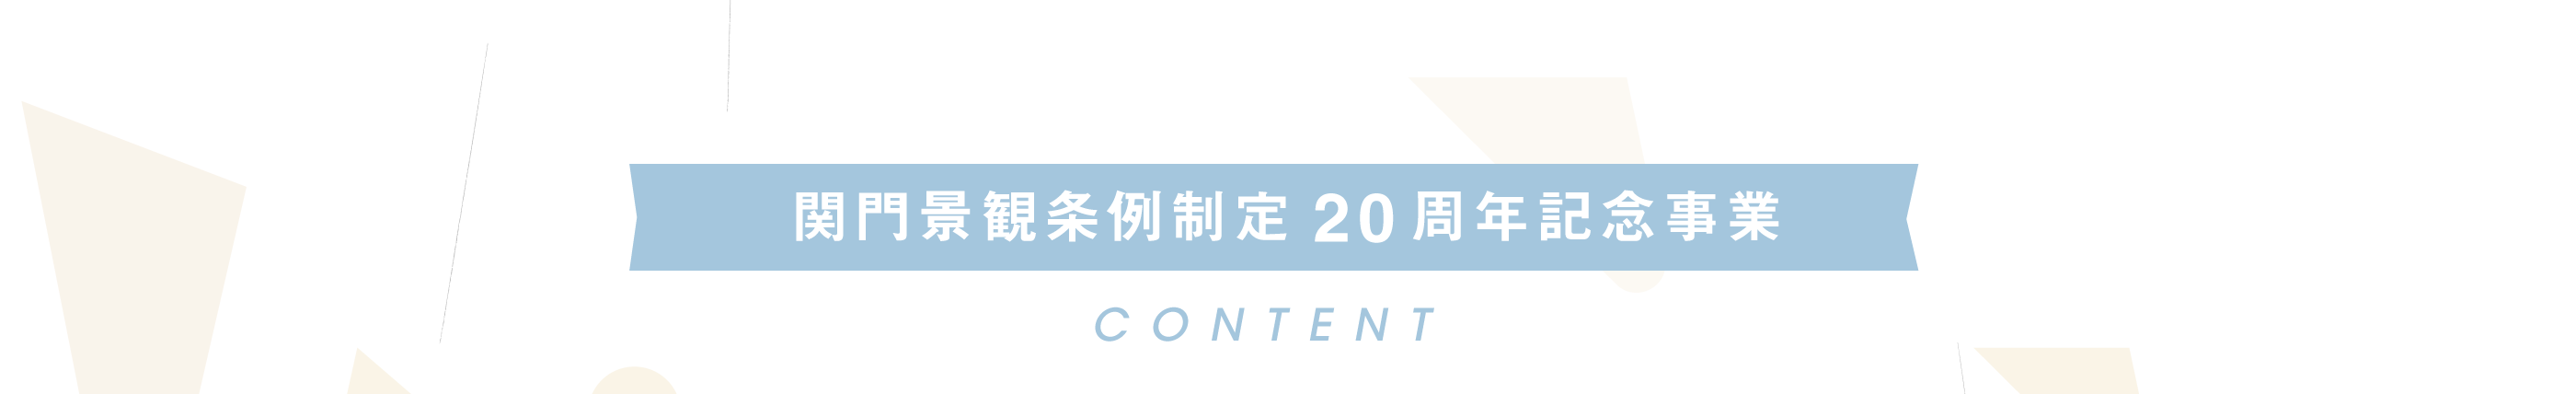 関門景観条例制定20周年記念事業 CONTENT